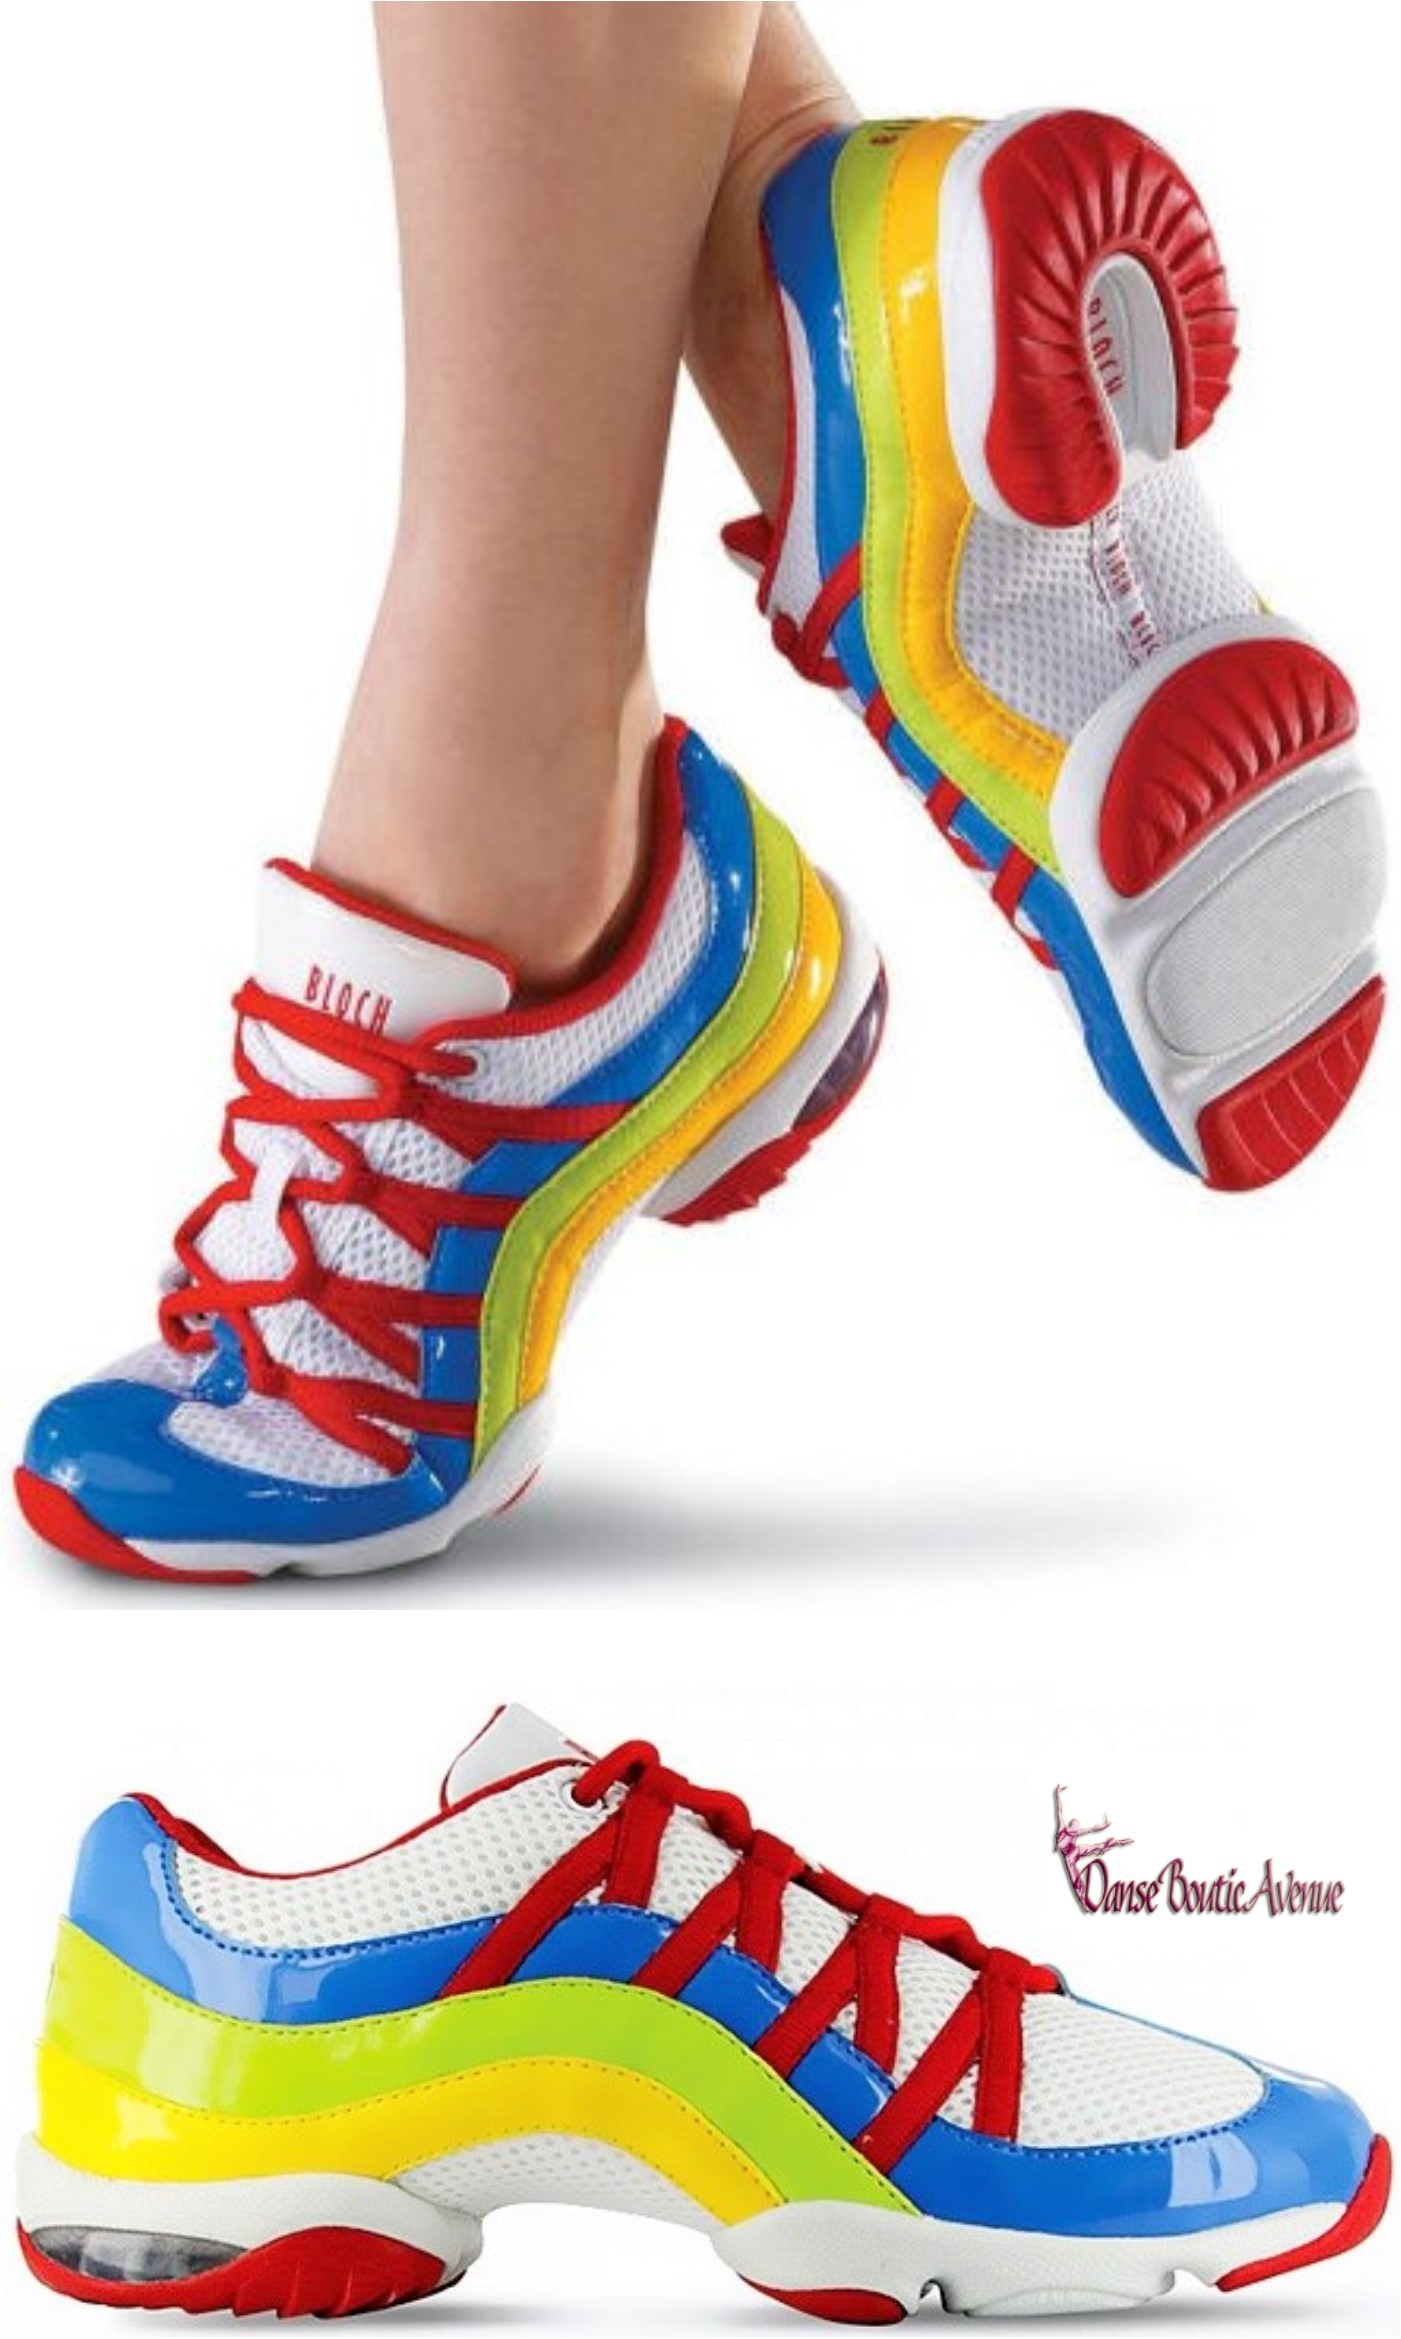 Chaussures de Zumba : top 5 des paires qui vont te faire danser !